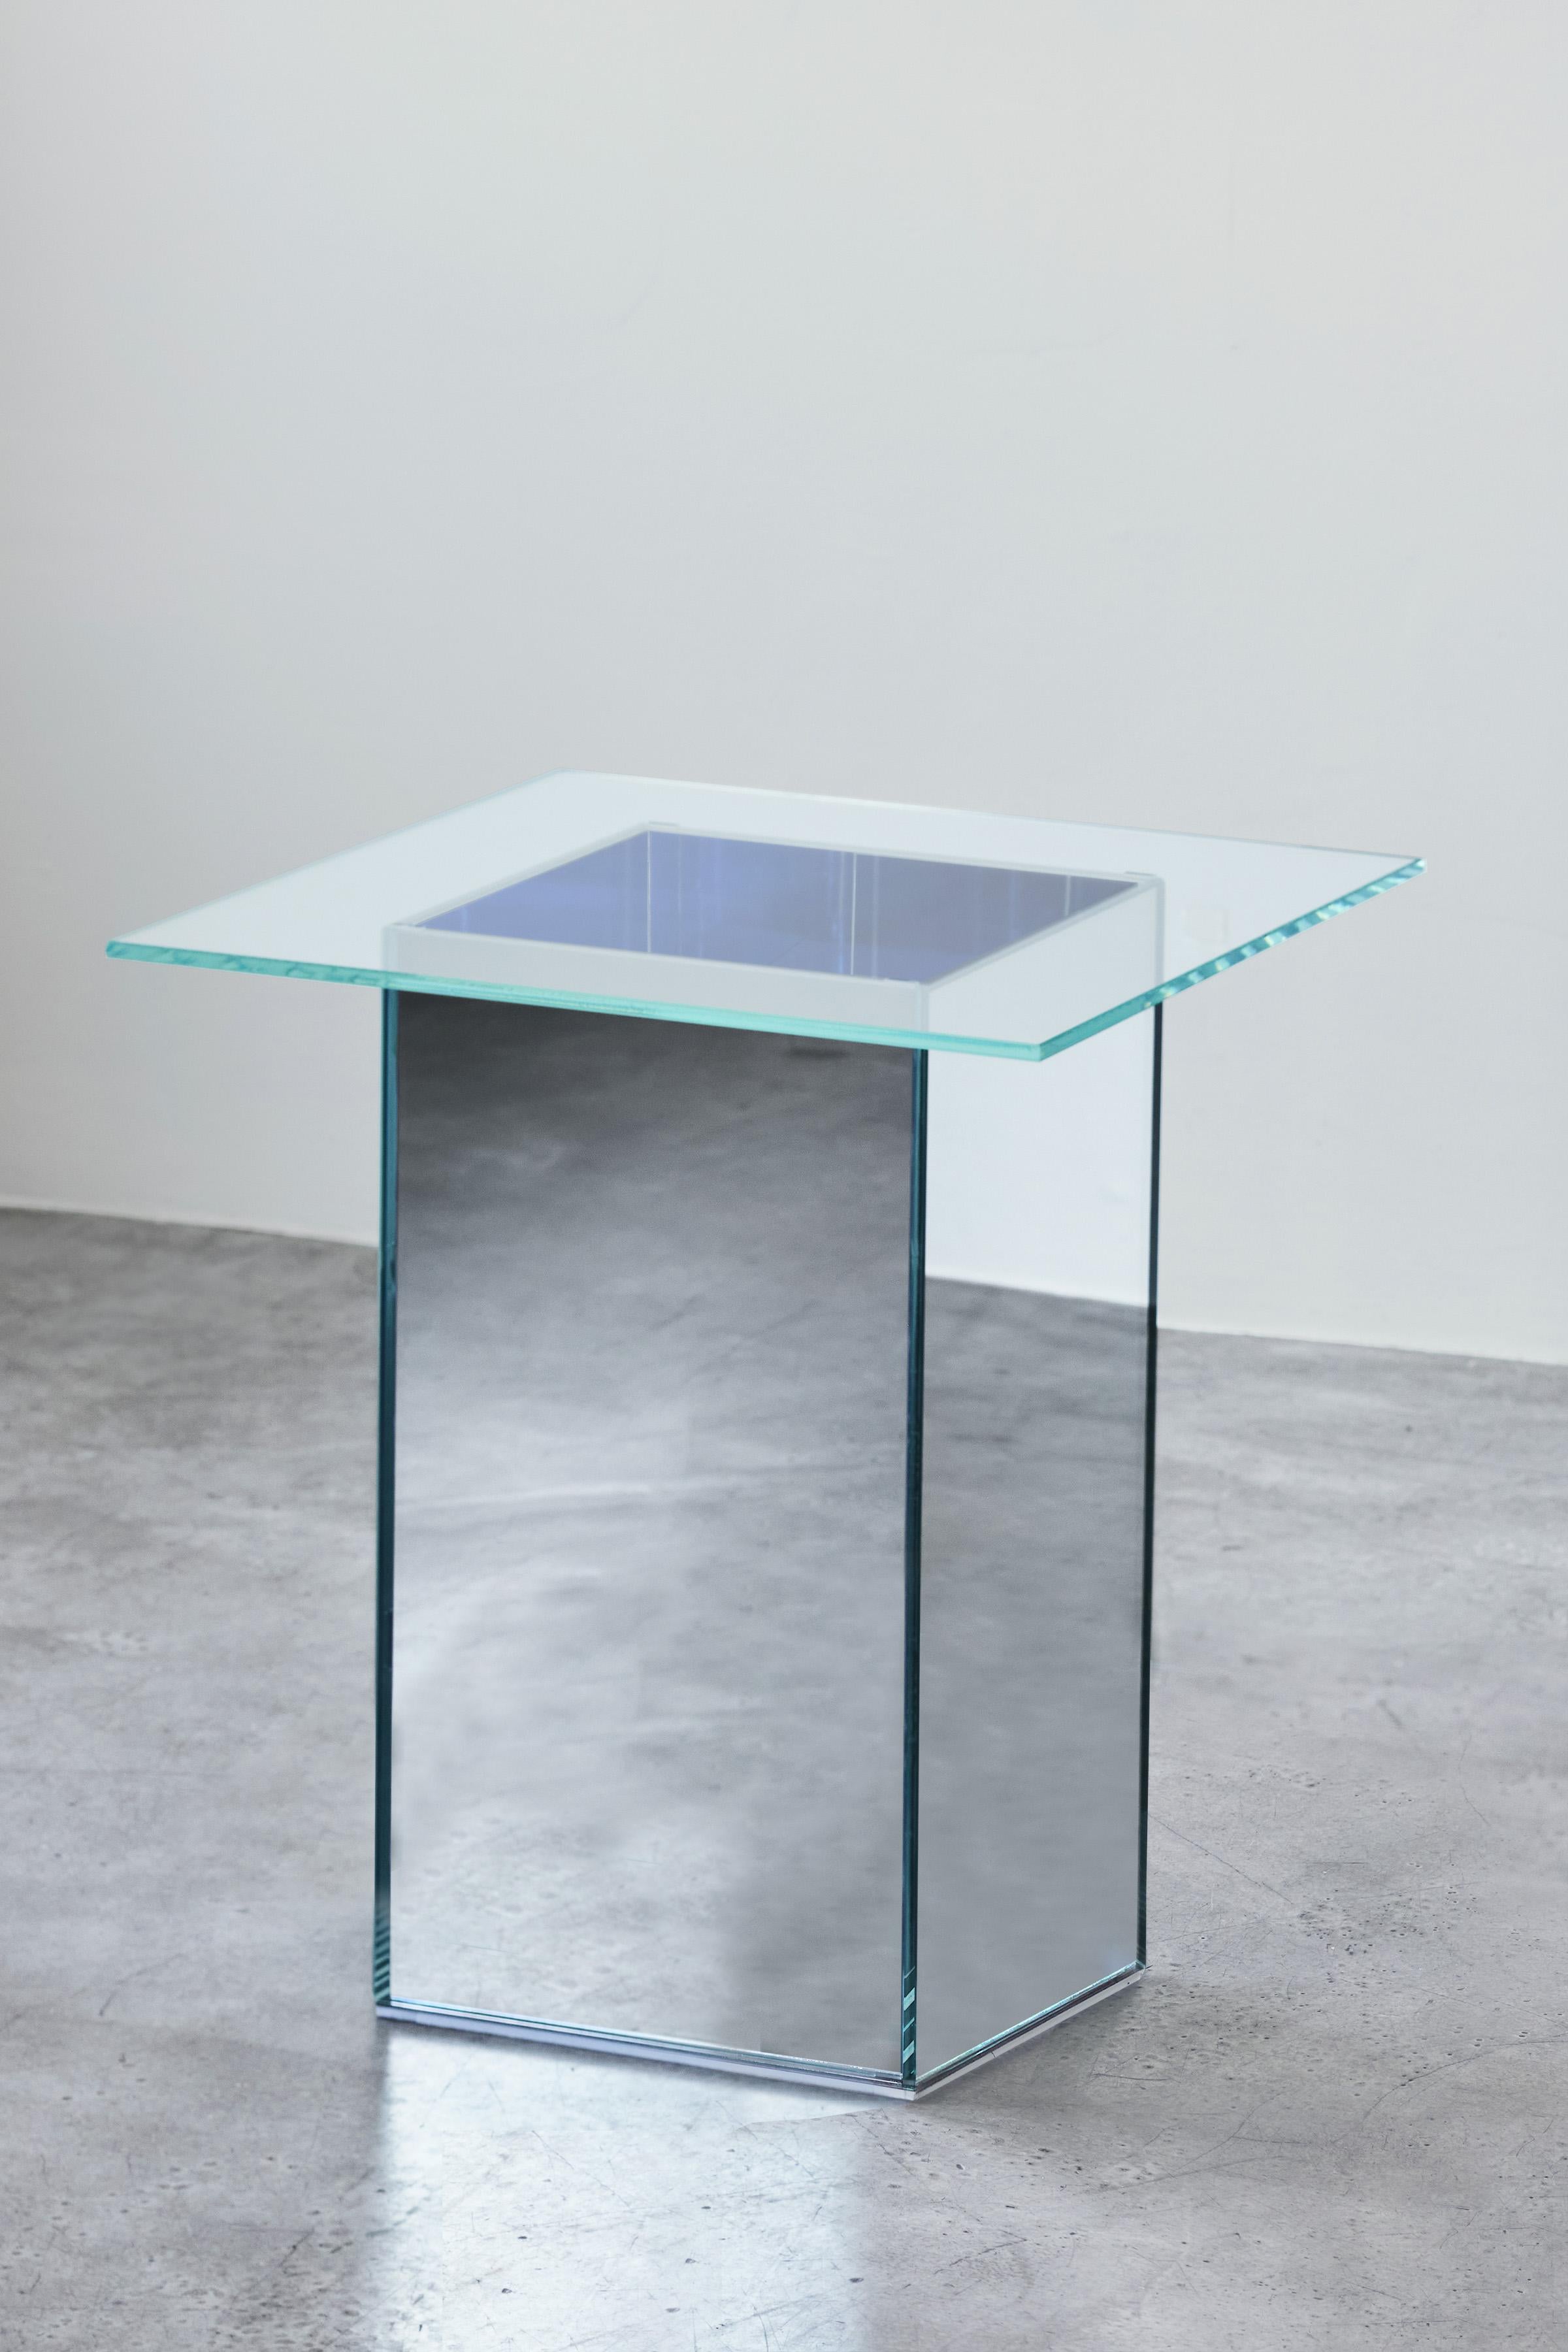 VIEW Tea Table ist Teil einer fünfteiligen Kollektion von skulpturalen Glas- und Spiegelmöbeln, die interaktive Ansichten in Objekte und Möbel bringen sollen. Der Teetisch VIEW besteht aus ultraklarem, bügelarmem Glas und einem verspiegelten